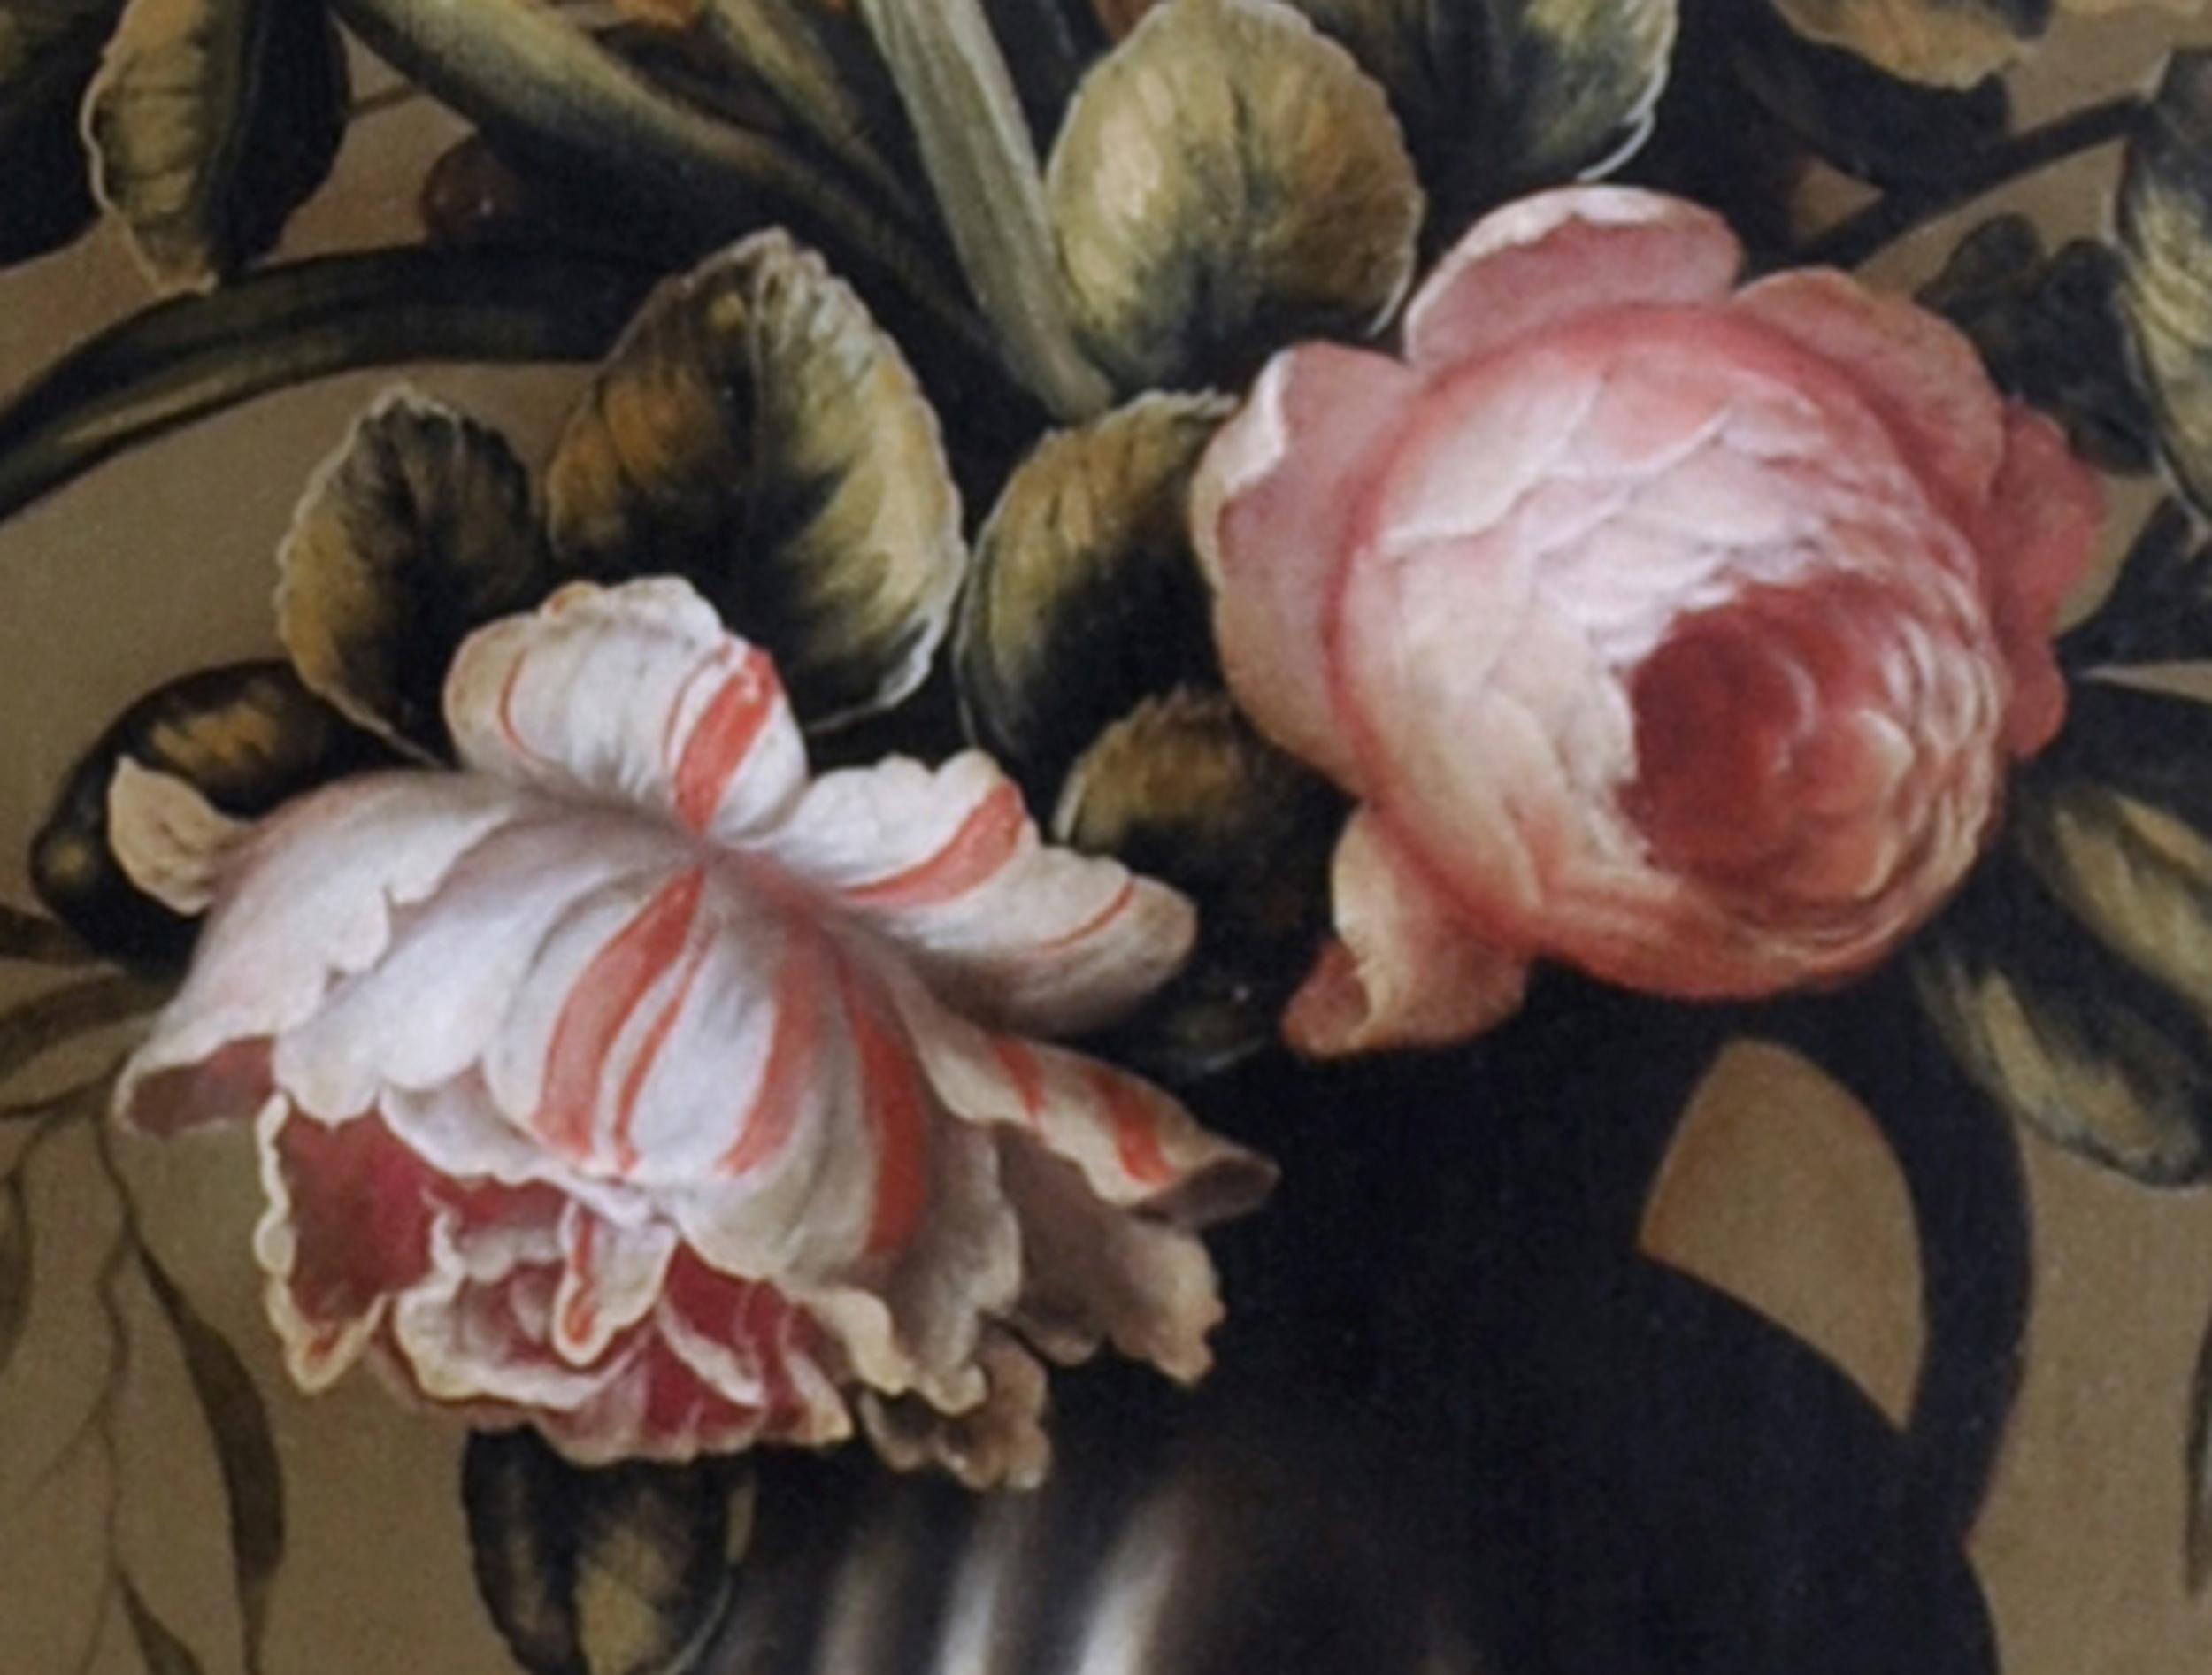 Blumen - Carlo De Tommasi Italia 2011 - Öl auf Leinwand cm. 80x50

In diesem kostbaren Ölgemälde lässt sich Carlo De Tommasi von den Kompositionen des Niederländers Balthasar van der Ast inspirieren, der sich als einer der ersten Künstler auf